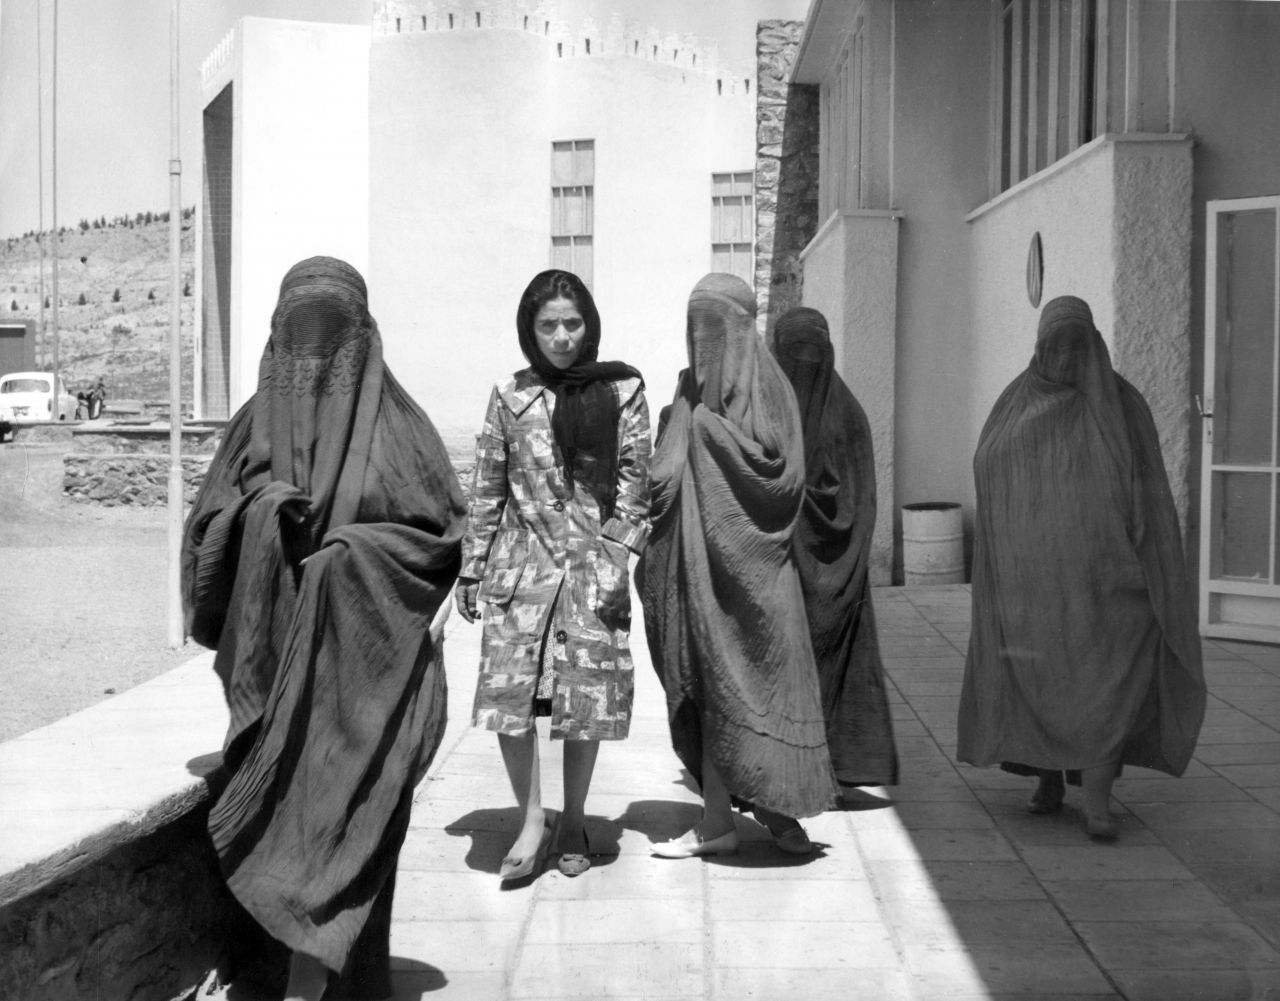 Männer mit langen Haaren und Frauen in bunten, kurzen Kleidern - der Lebens-Stil der Hippies sorgte unter den Konservativen für Kritik, doch immer mehr junge Afghan:innen mit westlichem Look tummelten sich in den Straßen Kabuls - wie dieses Bild zeigt.